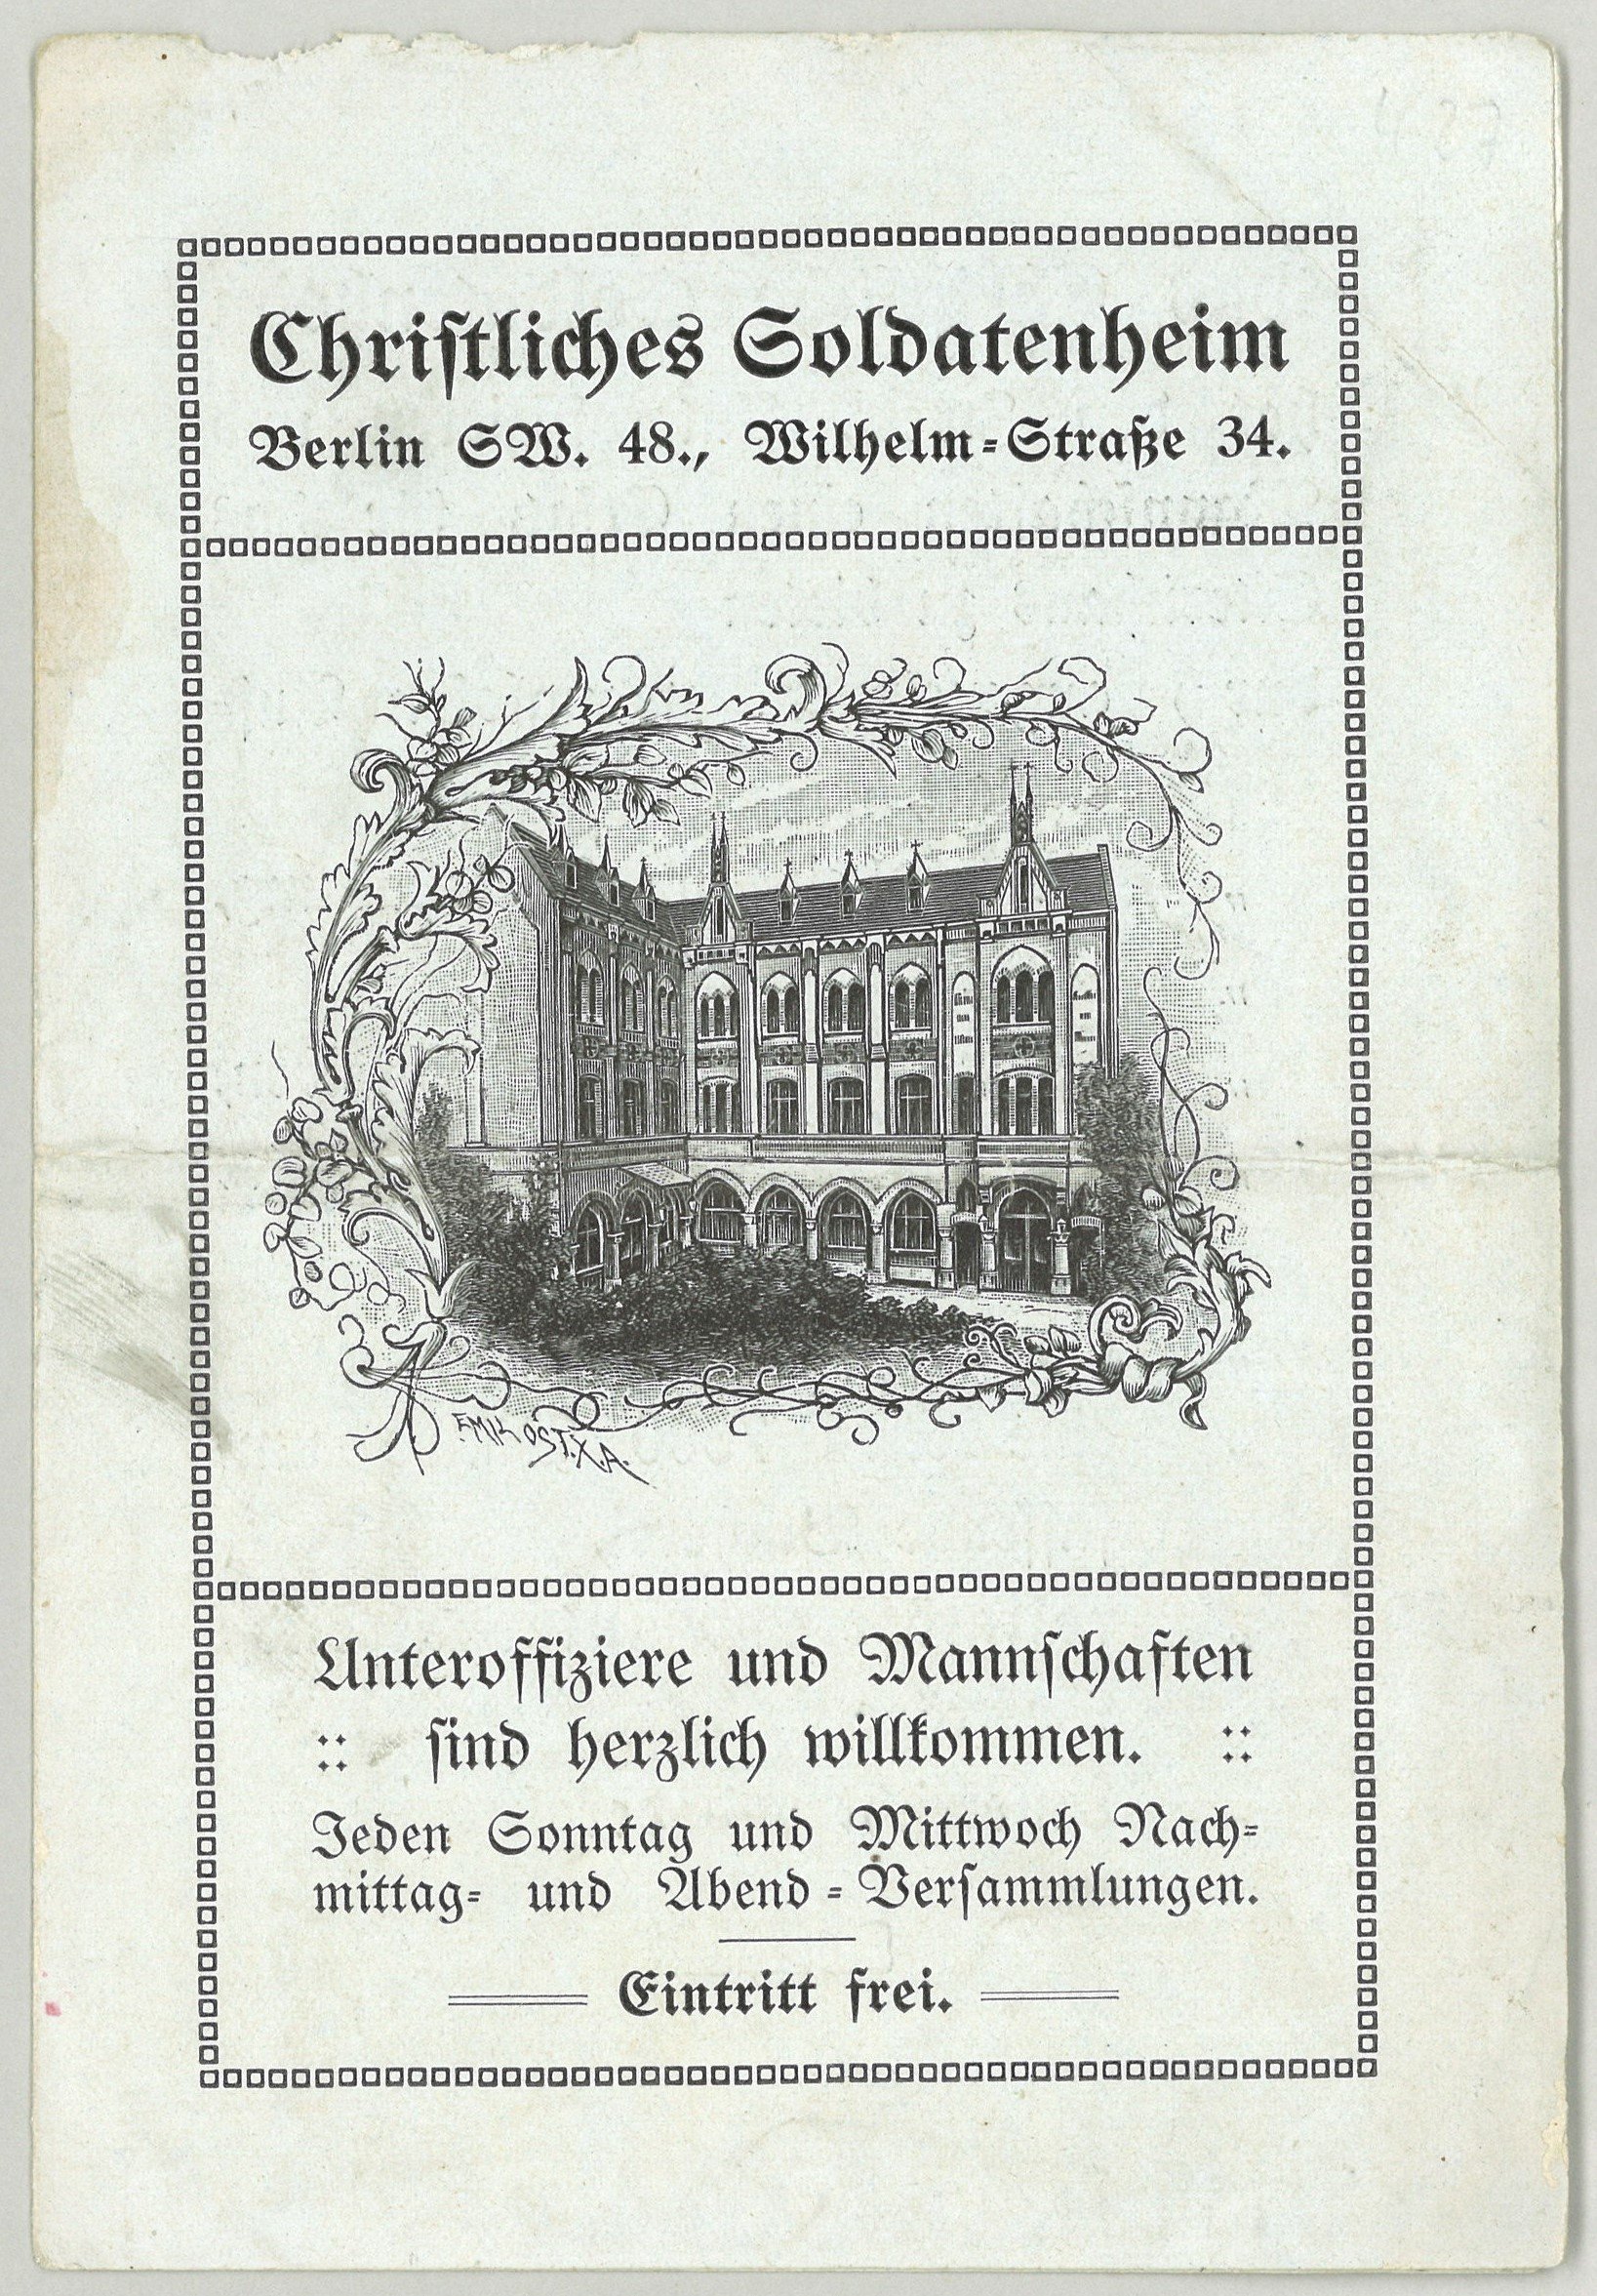 Christliches Soldatenheim, Berlin: Faltblatt (Landesgeschichtliche Vereinigung für die Mark Brandenburg e.V., Archiv CC BY)